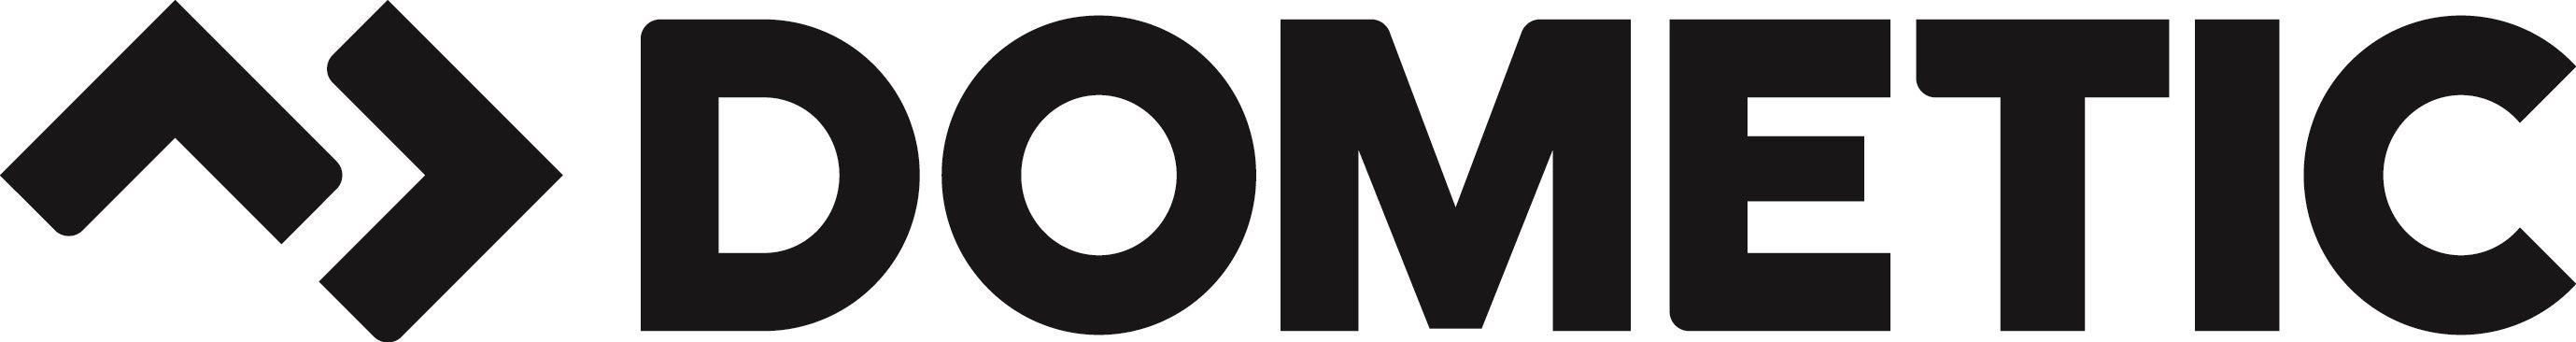 Bildresultat för dometic logo